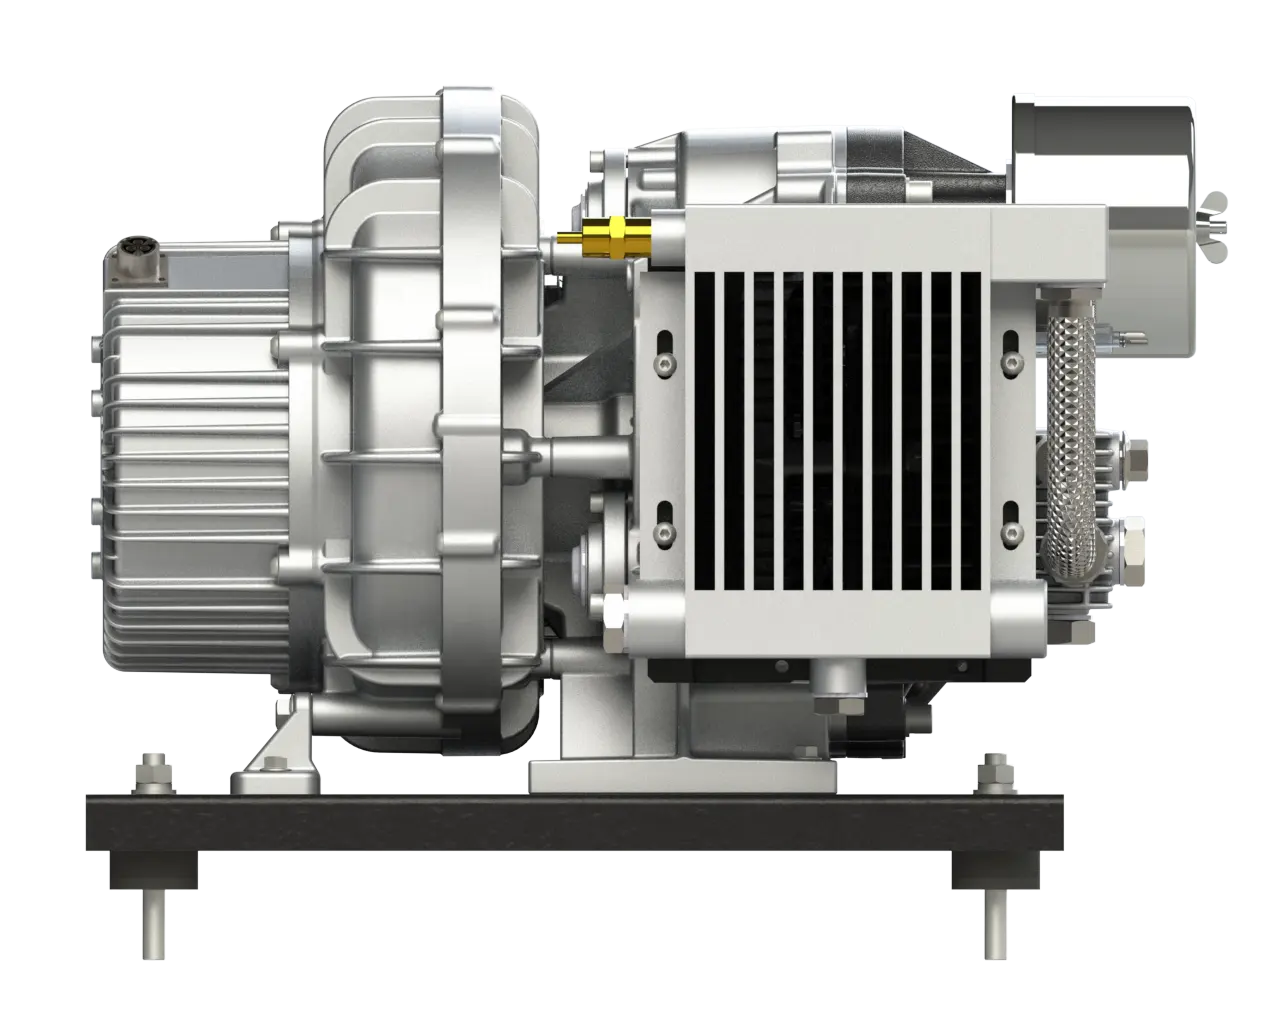 3.7 kW 5 HP pompa di alta qualità motore silenzioso Scroll testa elettrica pompa compressore d'aria senza olio prezzo alluminio stazionario